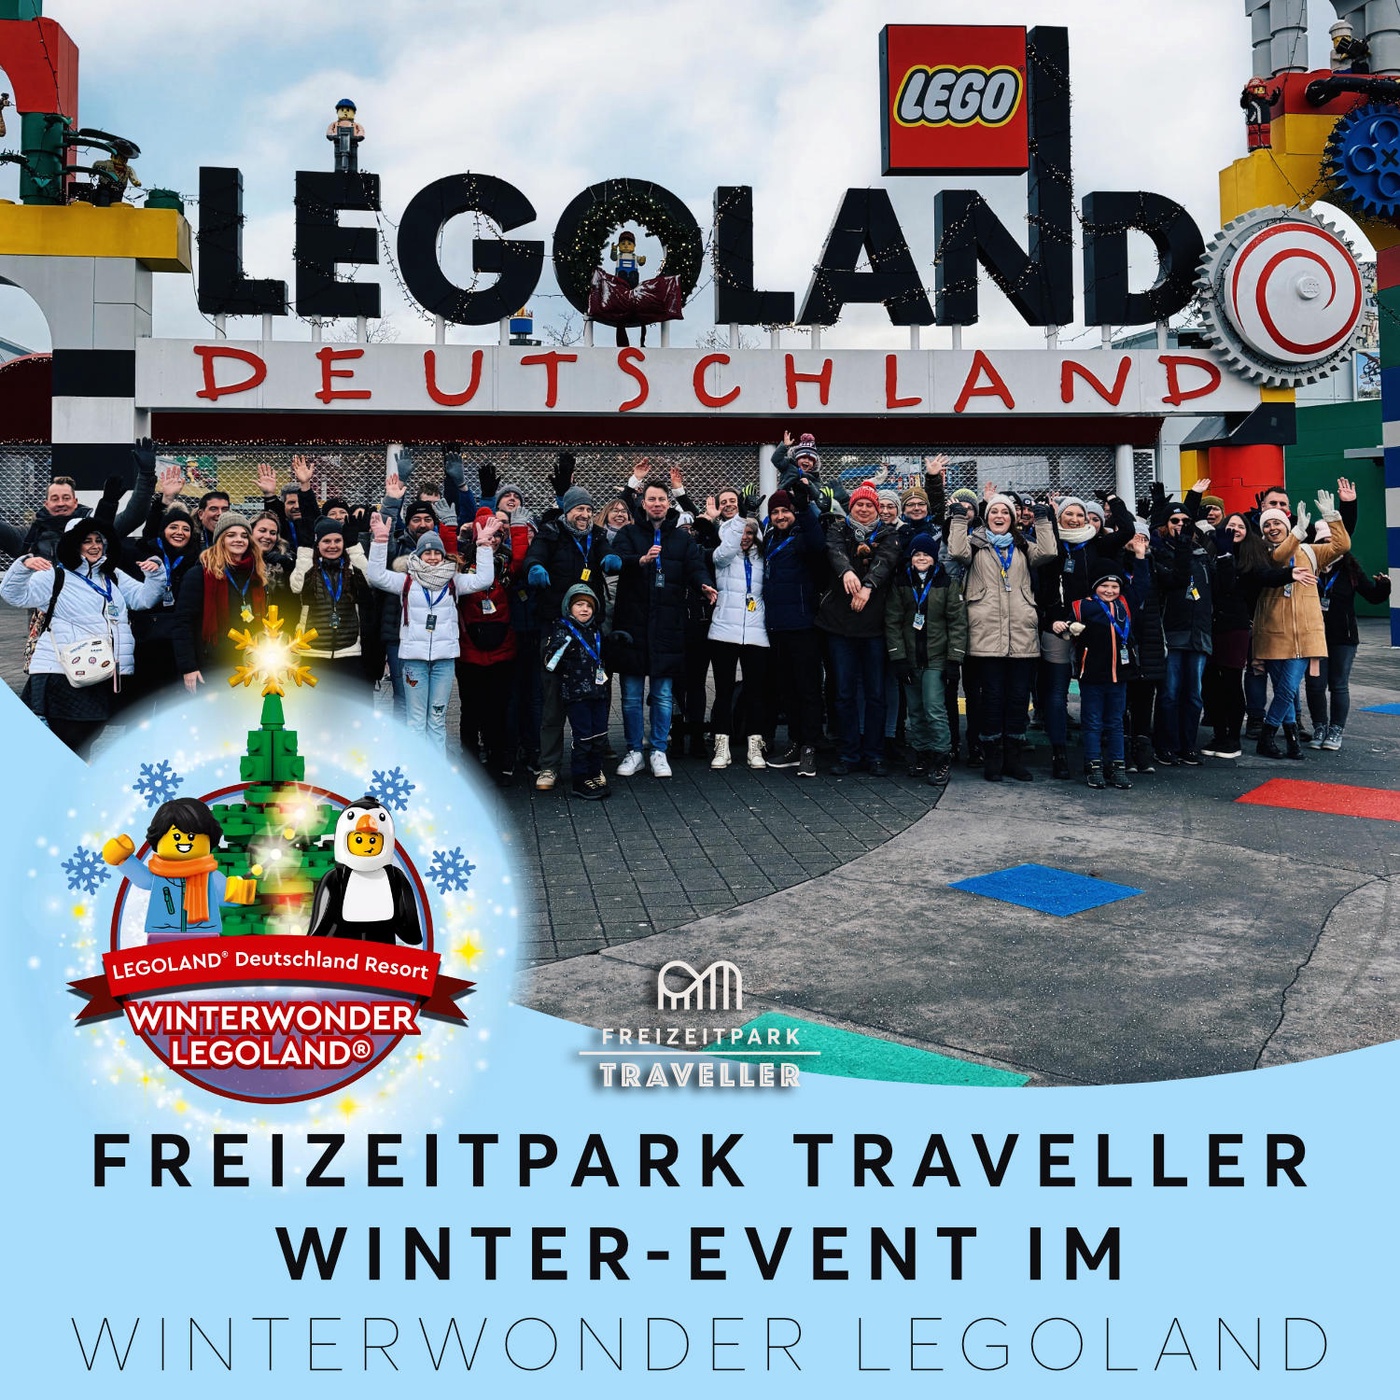 Freizeitpark Traveller Winter-Event im WinterWonder LEGOLAND